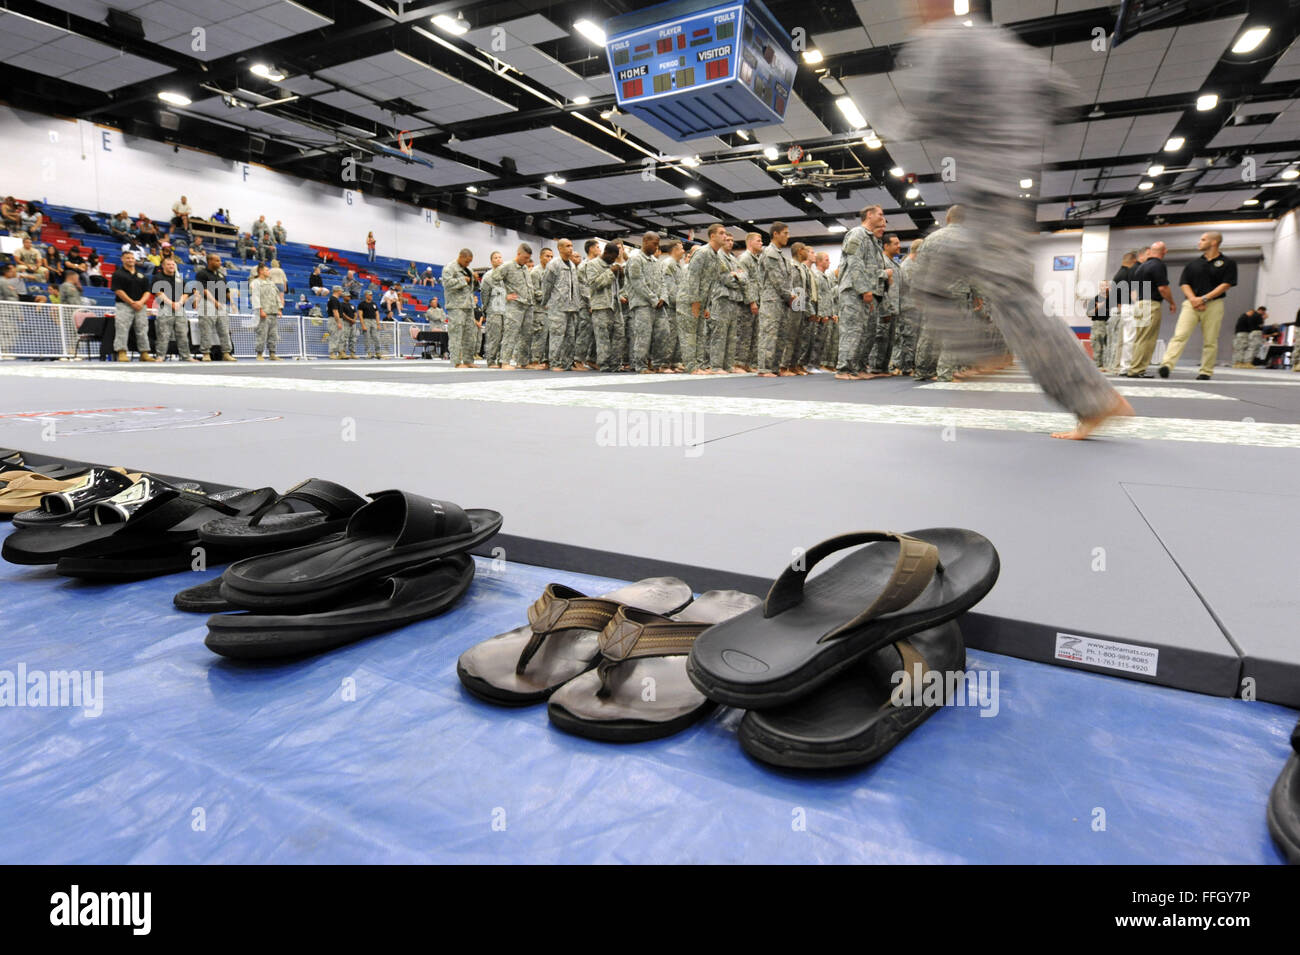 Un organo di servizio passa per una linea di sandali per unirsi agli altri concorrenti in formazione durante il round di apertura del 2012 U.S. Esercito Campionato Combatives concorrenza a Fort Hood Foto Stock